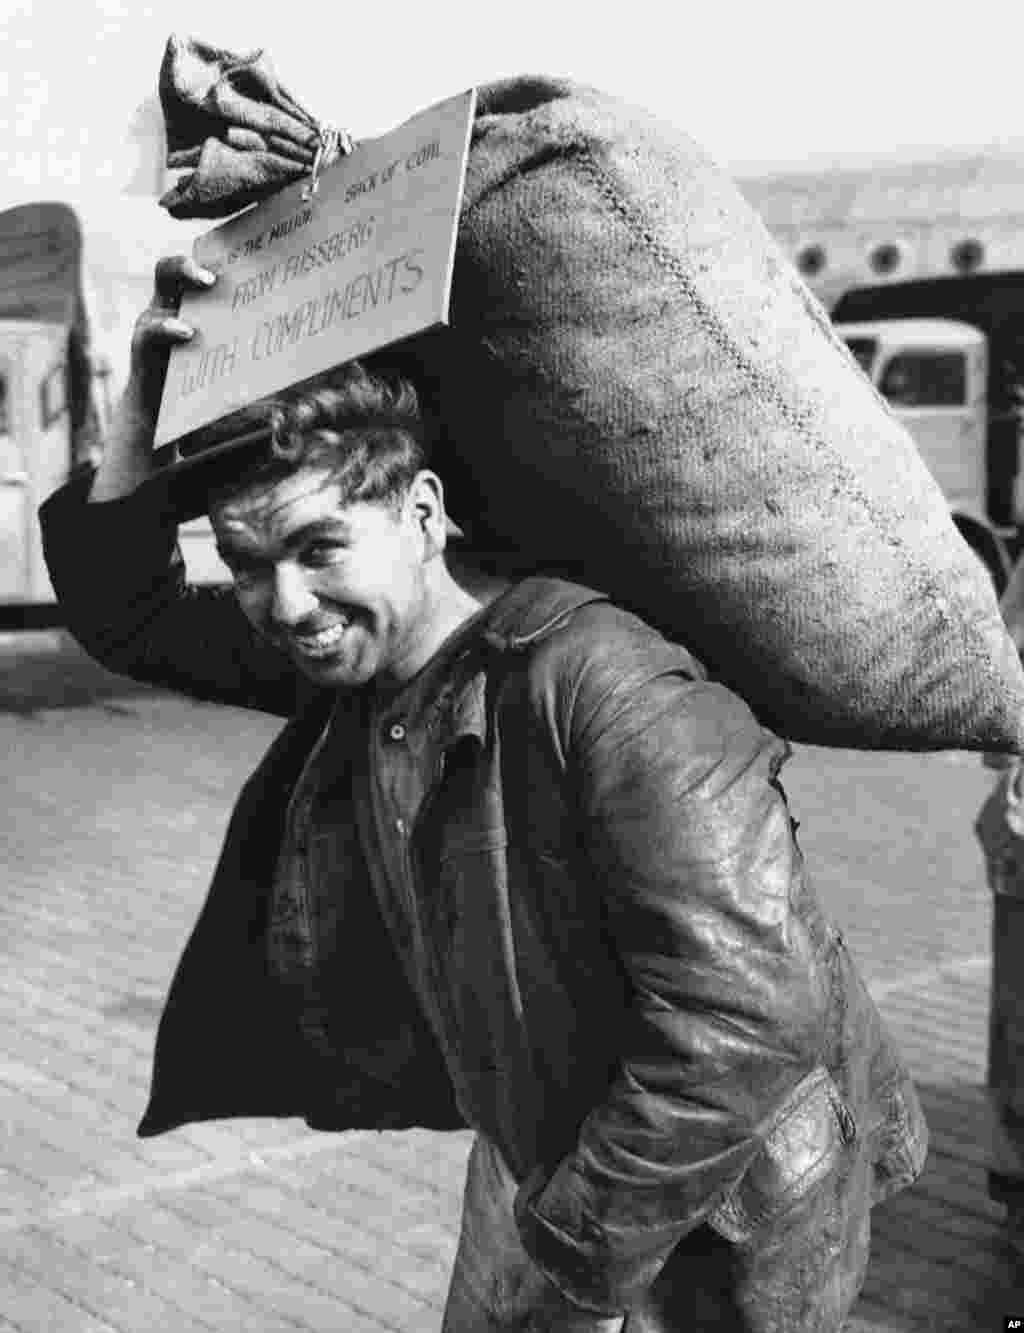 Немецкий рабочий несет миллионный доставленный в город мешок с углем, 20 сентября 1948 года. Надпись на &quot;открытке&quot; гласит: &quot;С наилучшими пожеланиями из Фассберга&quot;. База в Фассберге, Нижняя Саксония, использовалась британскими ВВС для операции, которую окрестили &quot;Летающие угольные вагонетки&quot;.&nbsp;&nbsp;